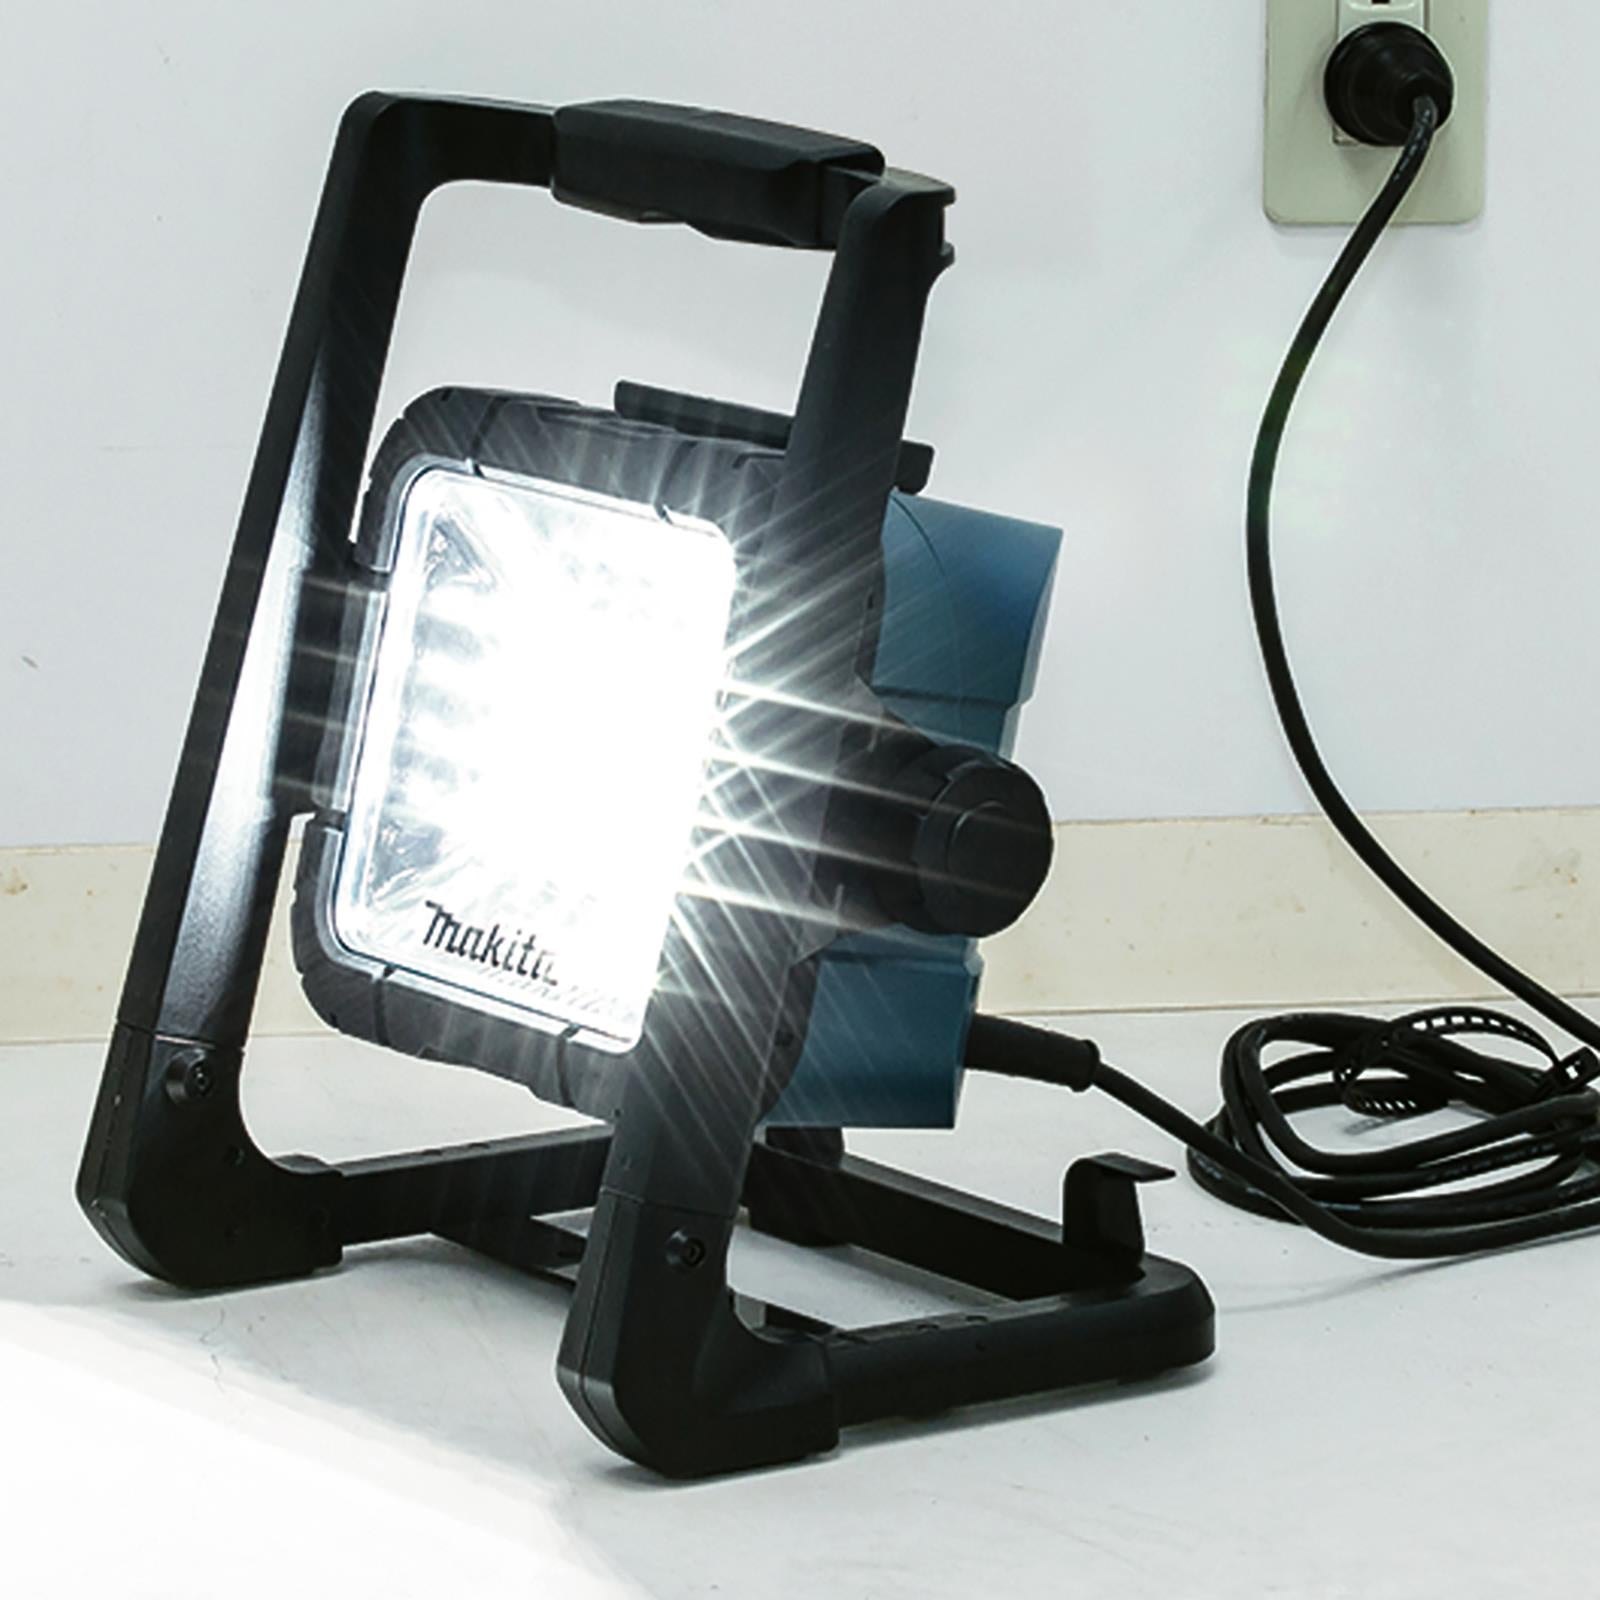 Makita Site Light Worklight Lamp LED 240V 18V LXT Corded Cordless DML805/2